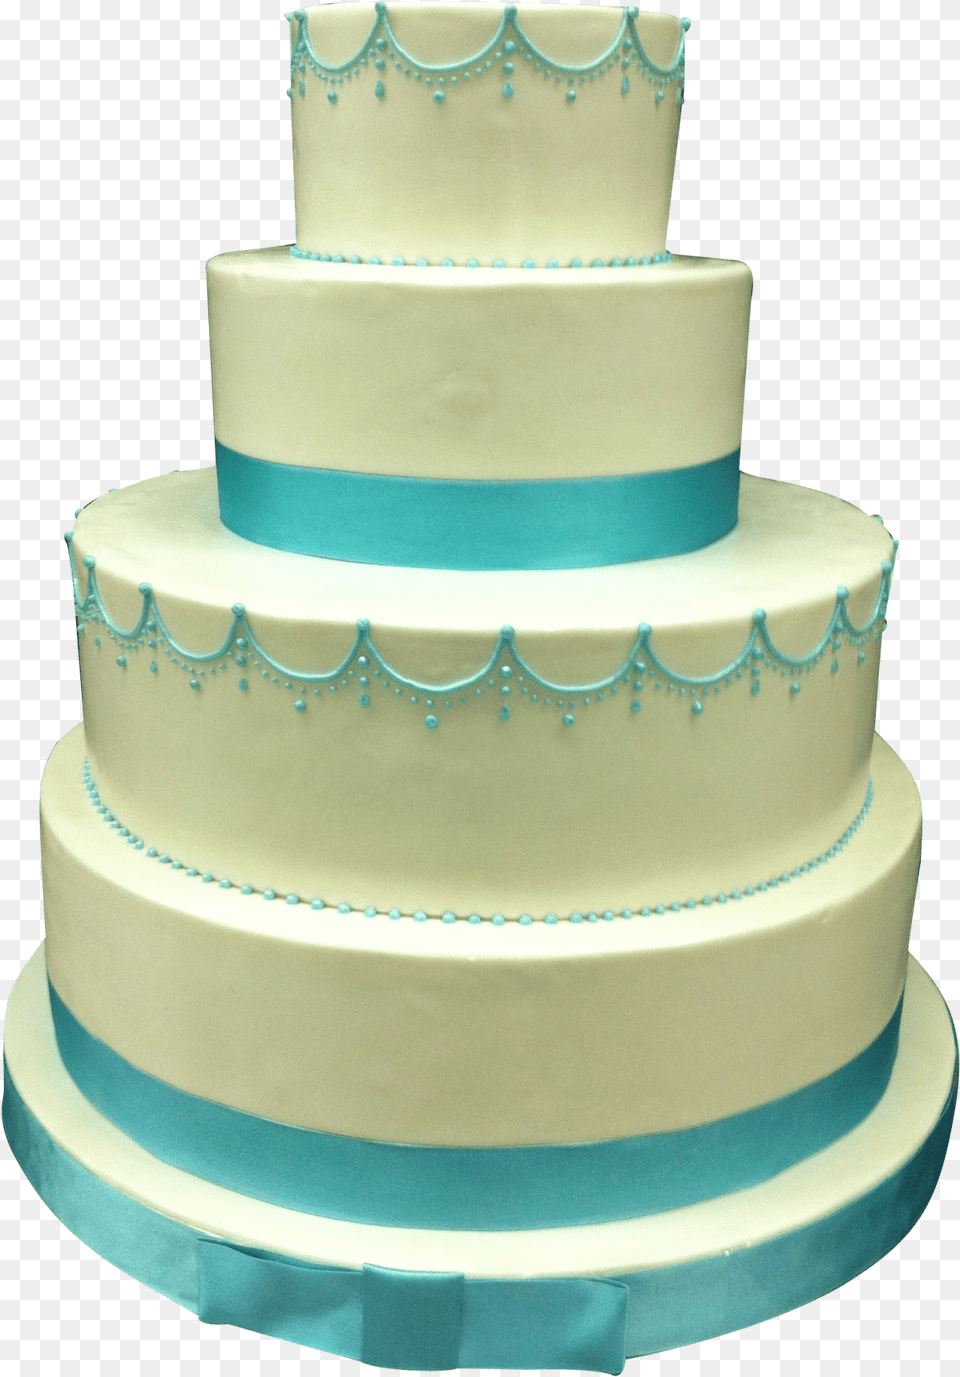 Blue Ribbon Wedding Cake Wedding Cake, Dessert, Food, Wedding Cake Png Image